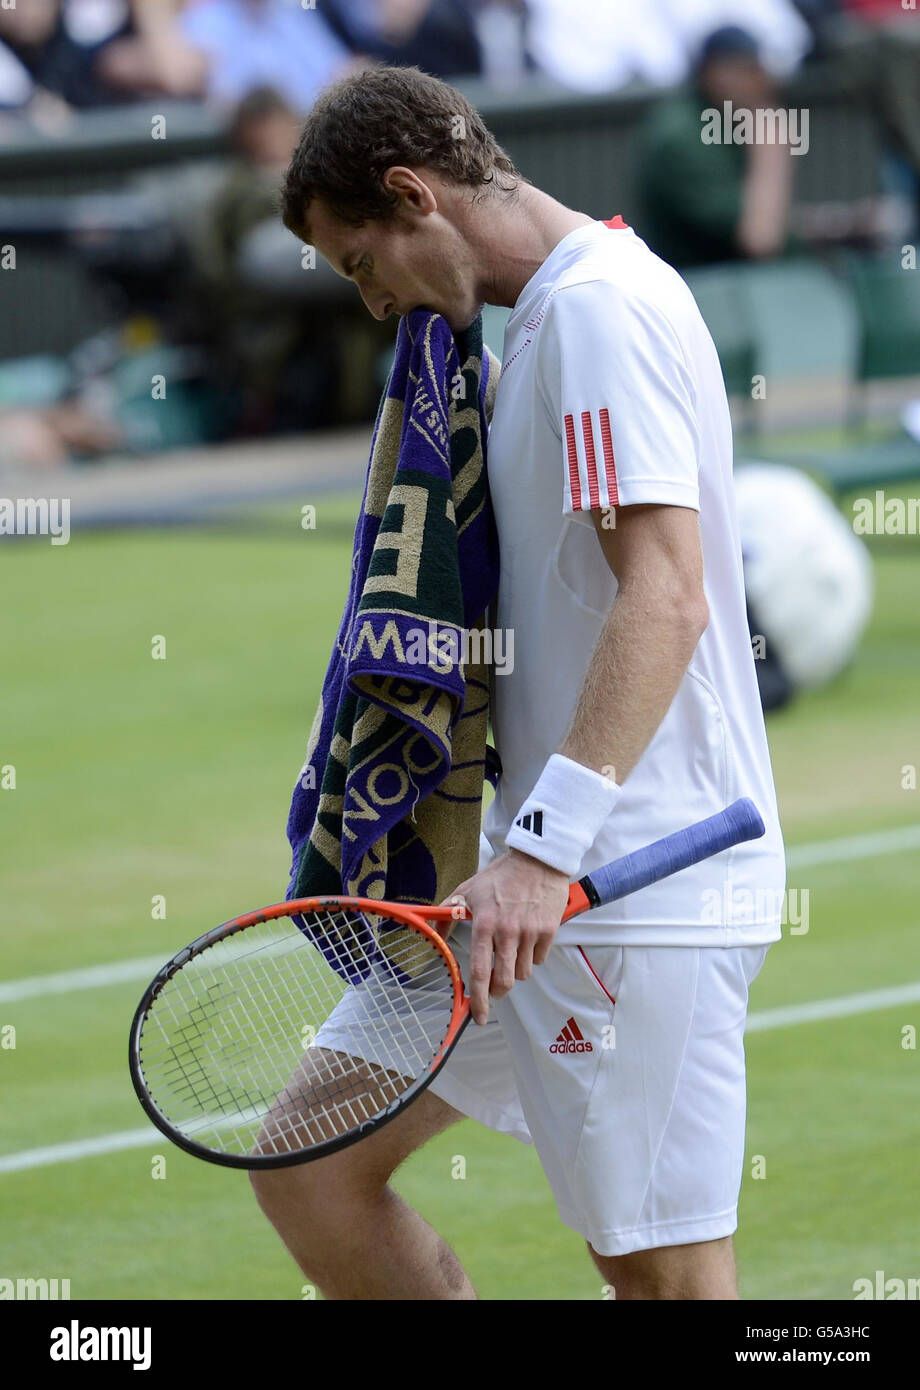 Andy Murray della Gran Bretagna reagisce nella sua partita contro il francese Jo-Wilfried Tsonga durante il giorno undici dei campionati di Wimbledon 2012 all'All England Lawn Tennis Club, Wimbledon. Foto Stock